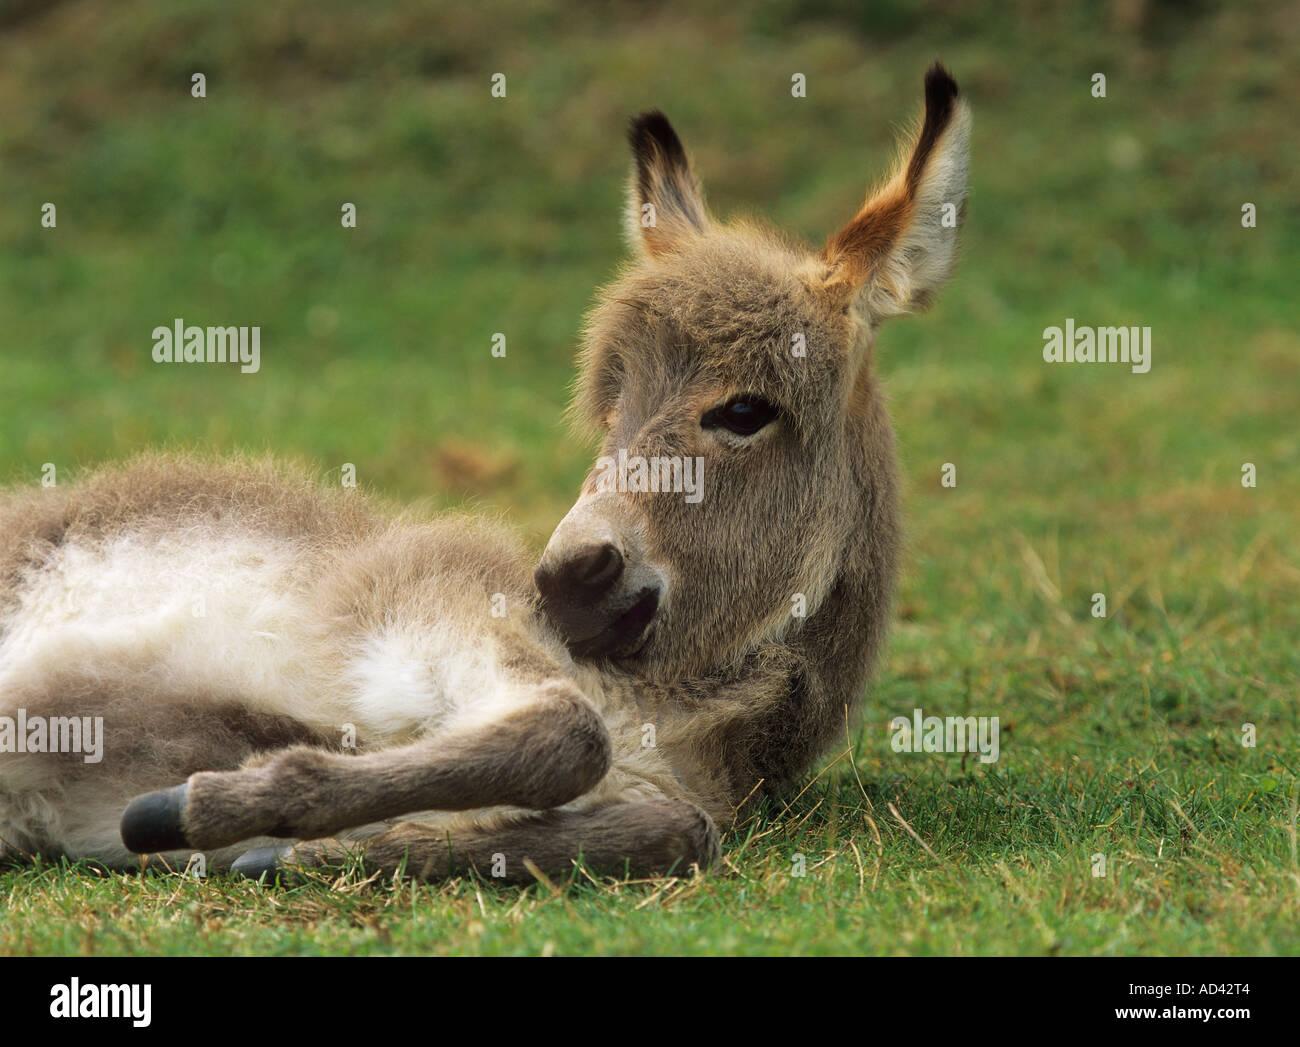 donkey foal lying on meadow Stock Photo